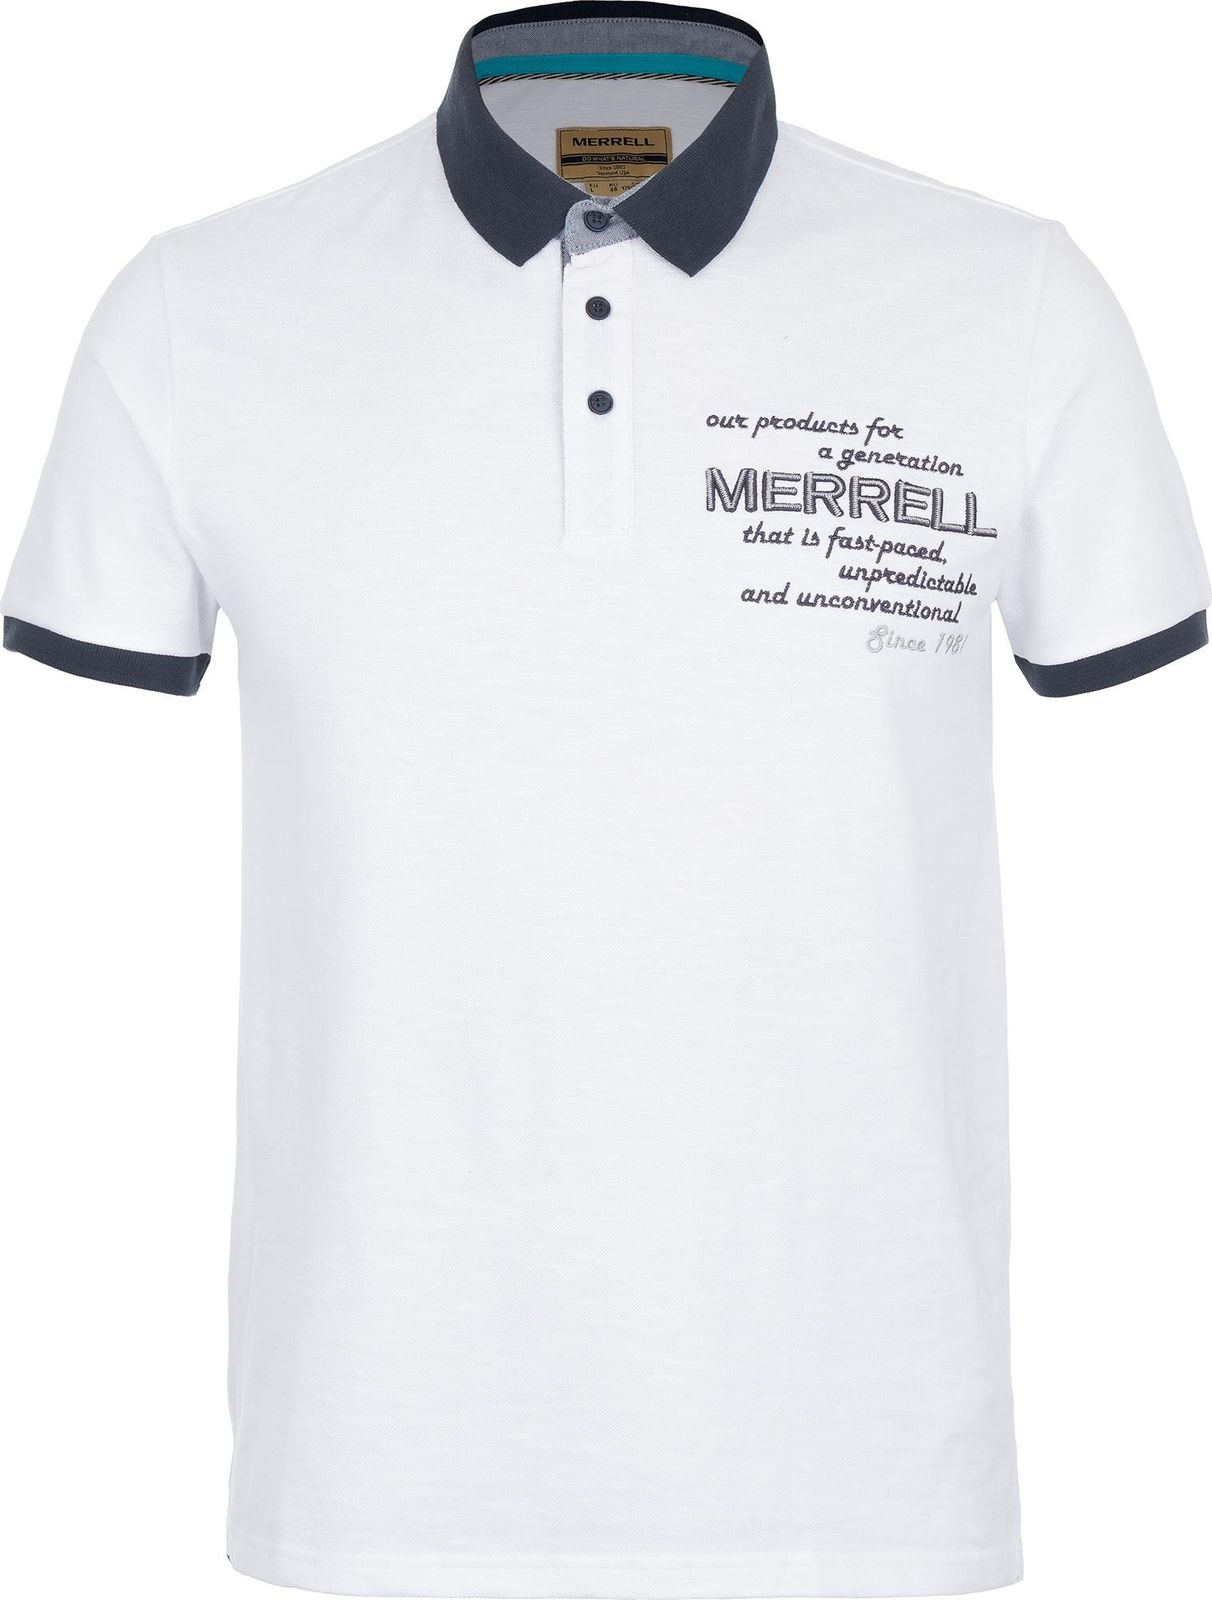   Merrell Men's Polo, : . S17AMRPOM01-00.  52